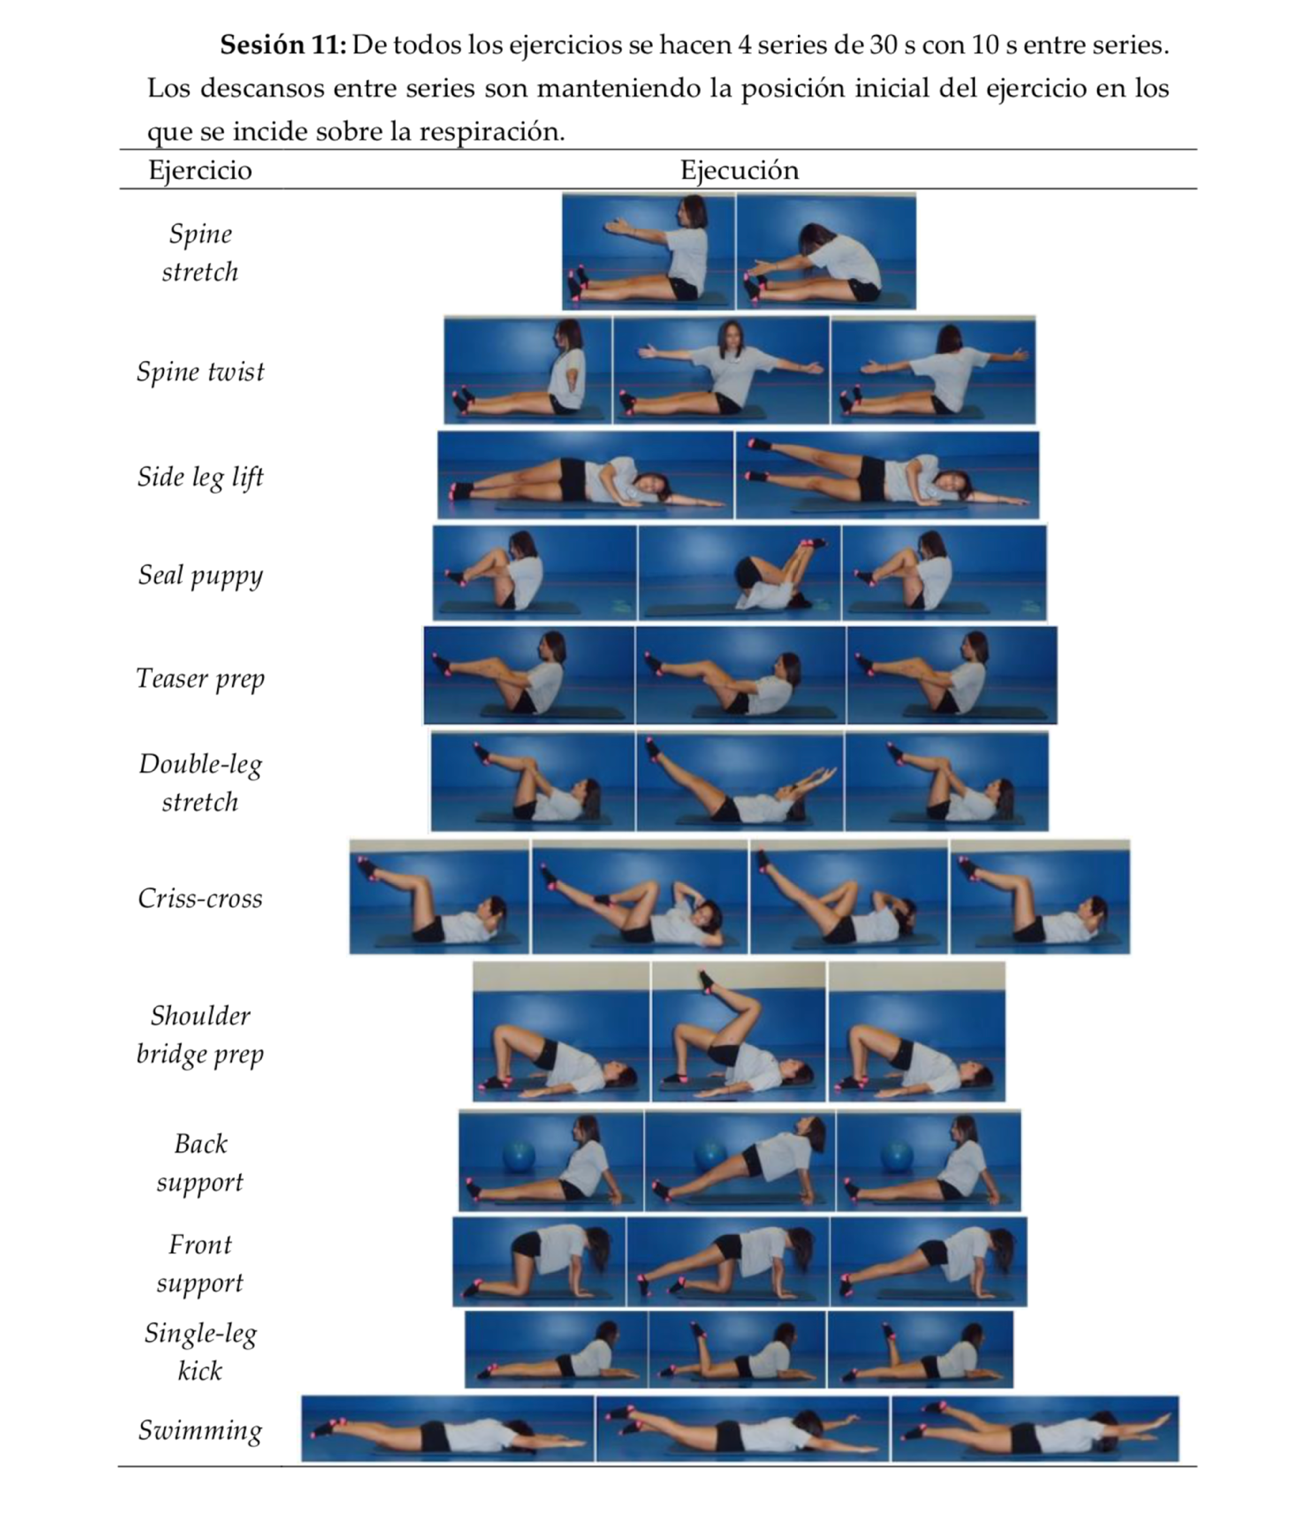 tabla con imágenes de ejercicios de pilates